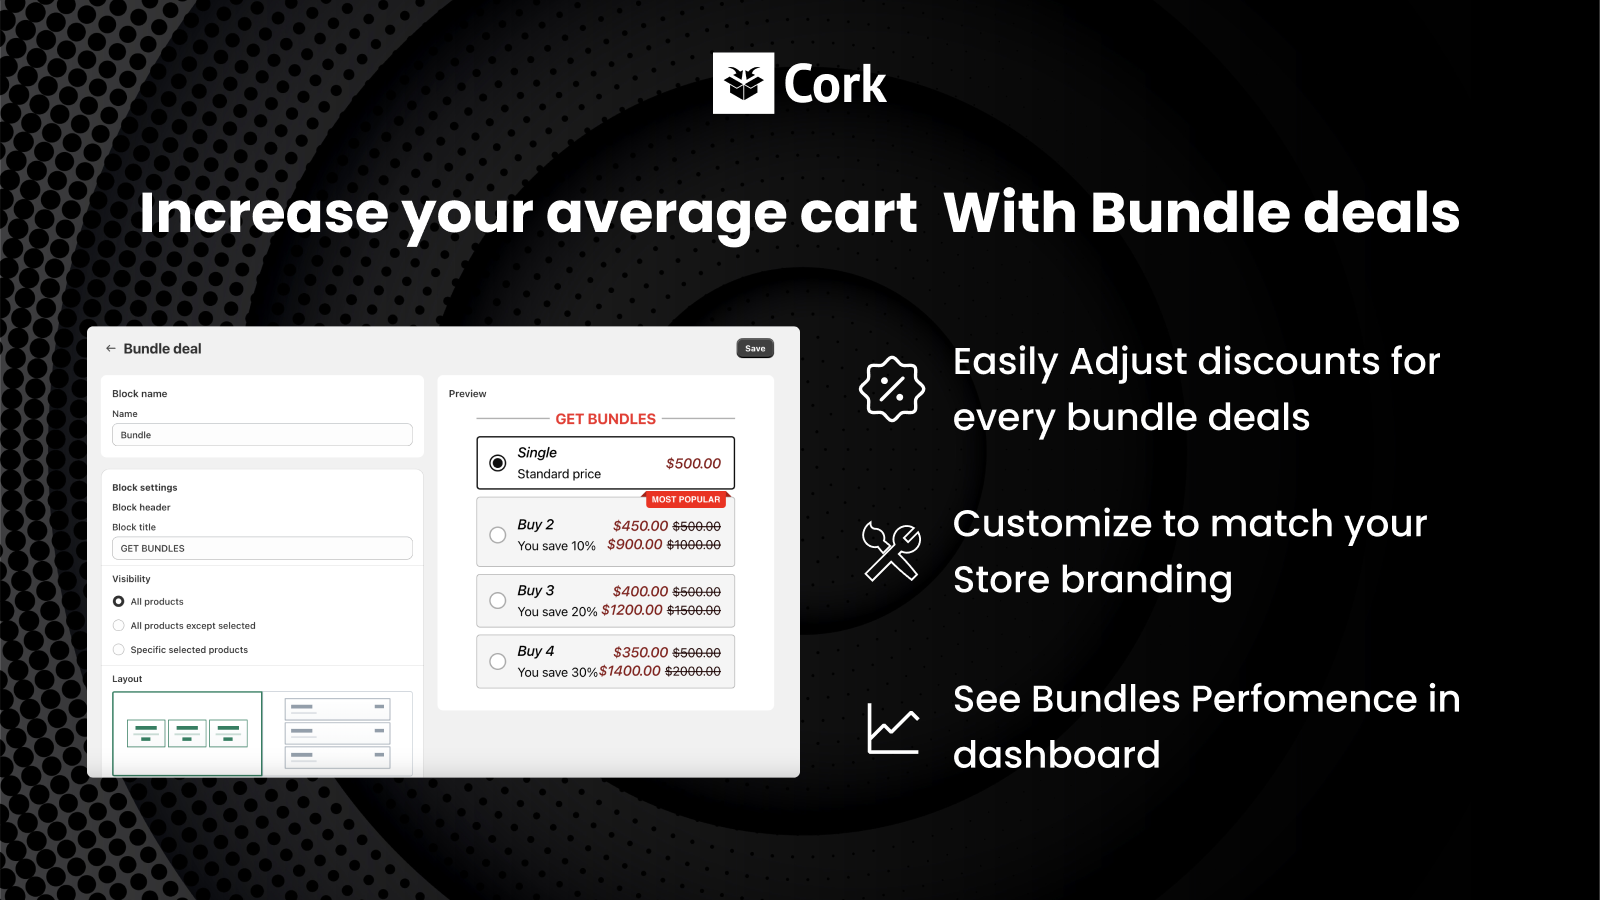  Cork - Produktbündel-App